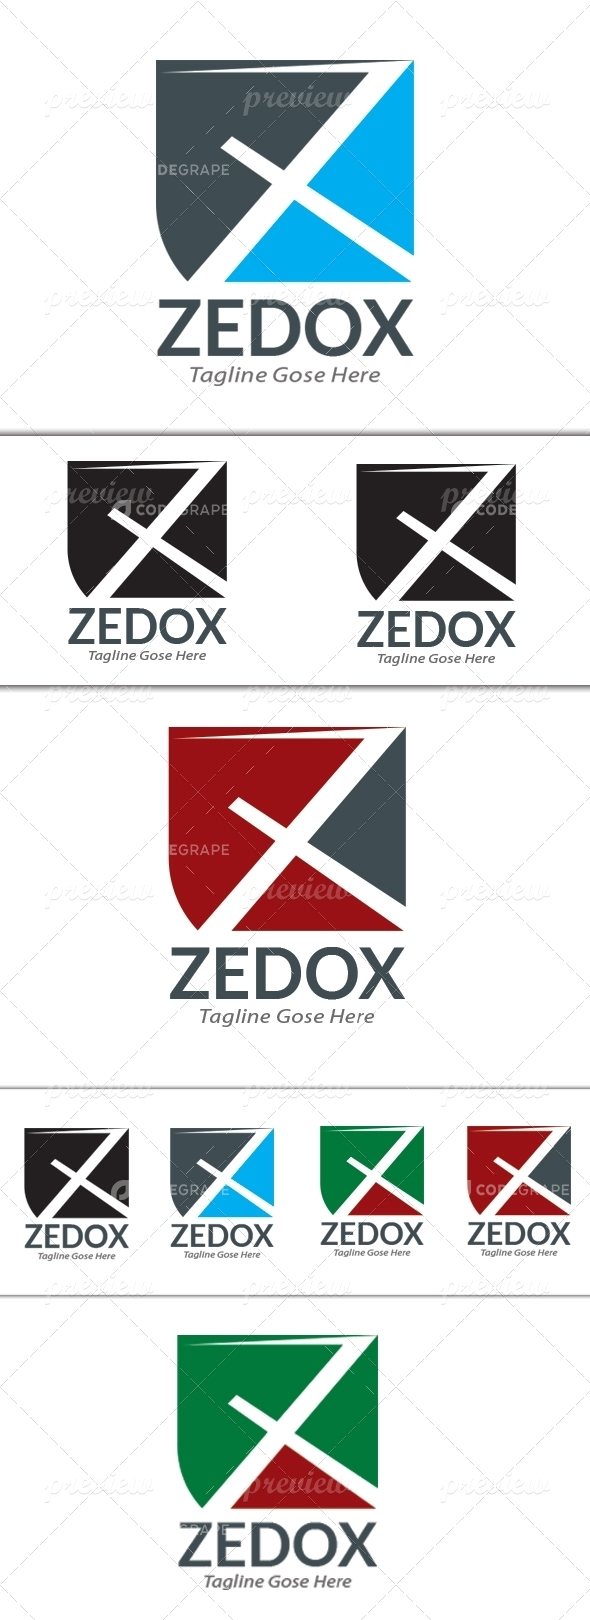 Zedox Business Logo